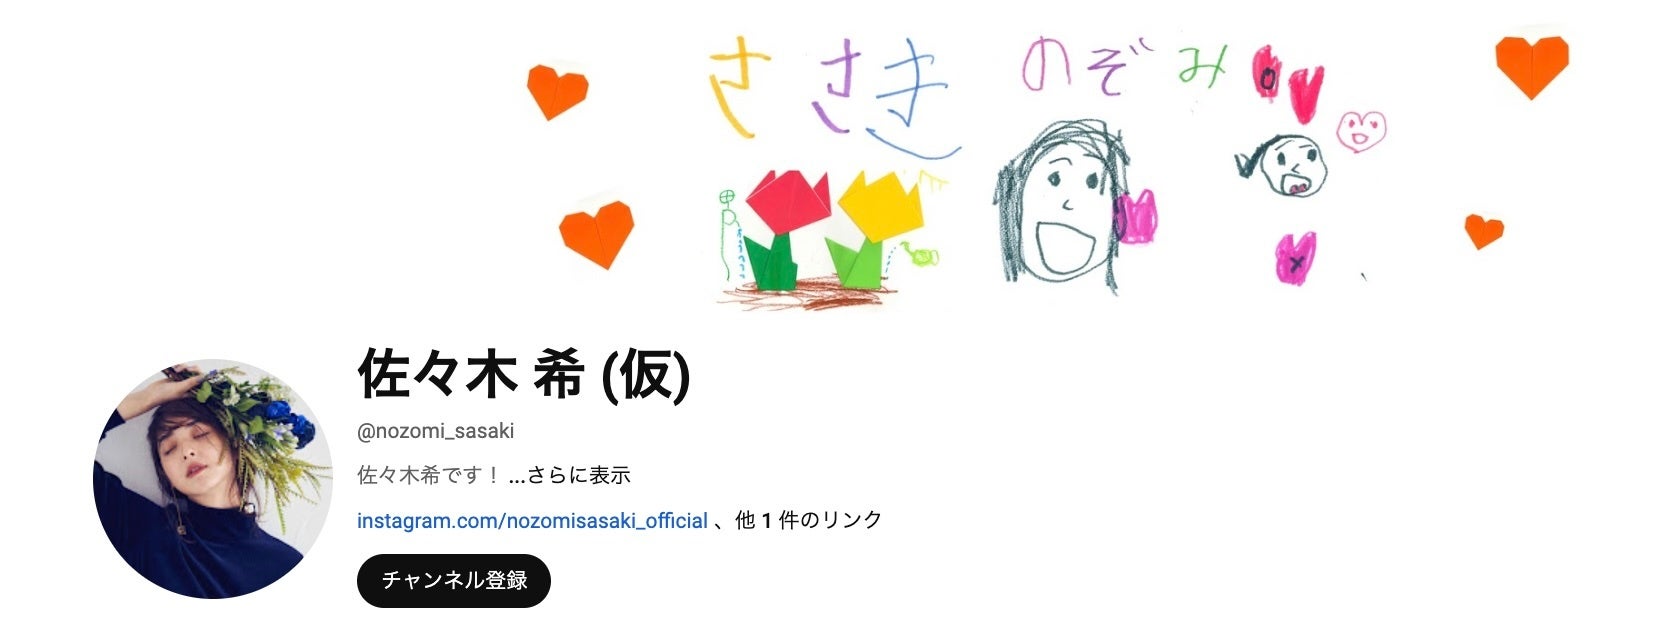 女優の佐々木 希さんがYouTube公式チャンネル『佐々木 希(仮)』を開設